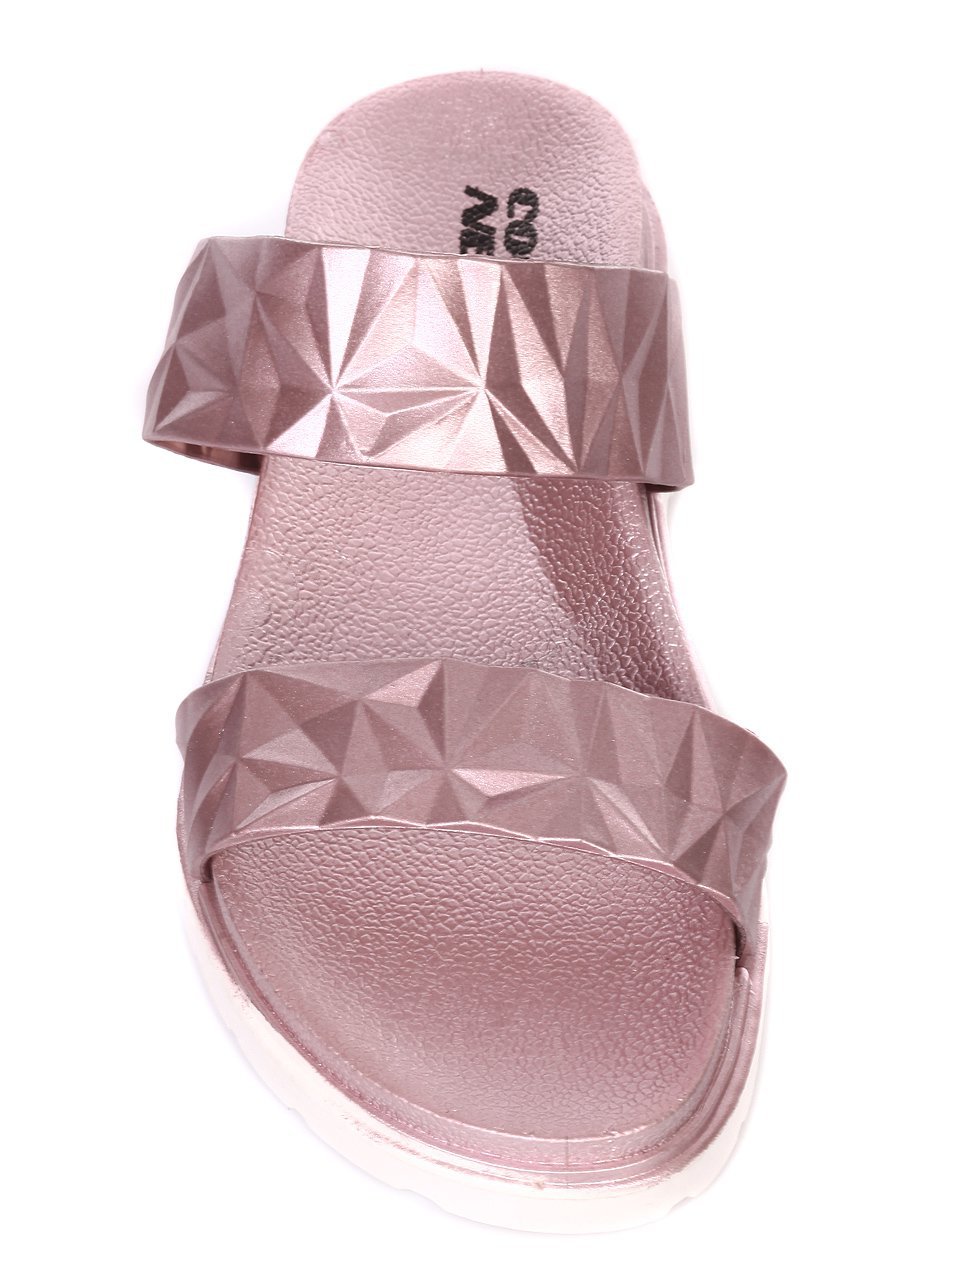 Ежедневни дамски чехли в розово 5Z-18462 pink